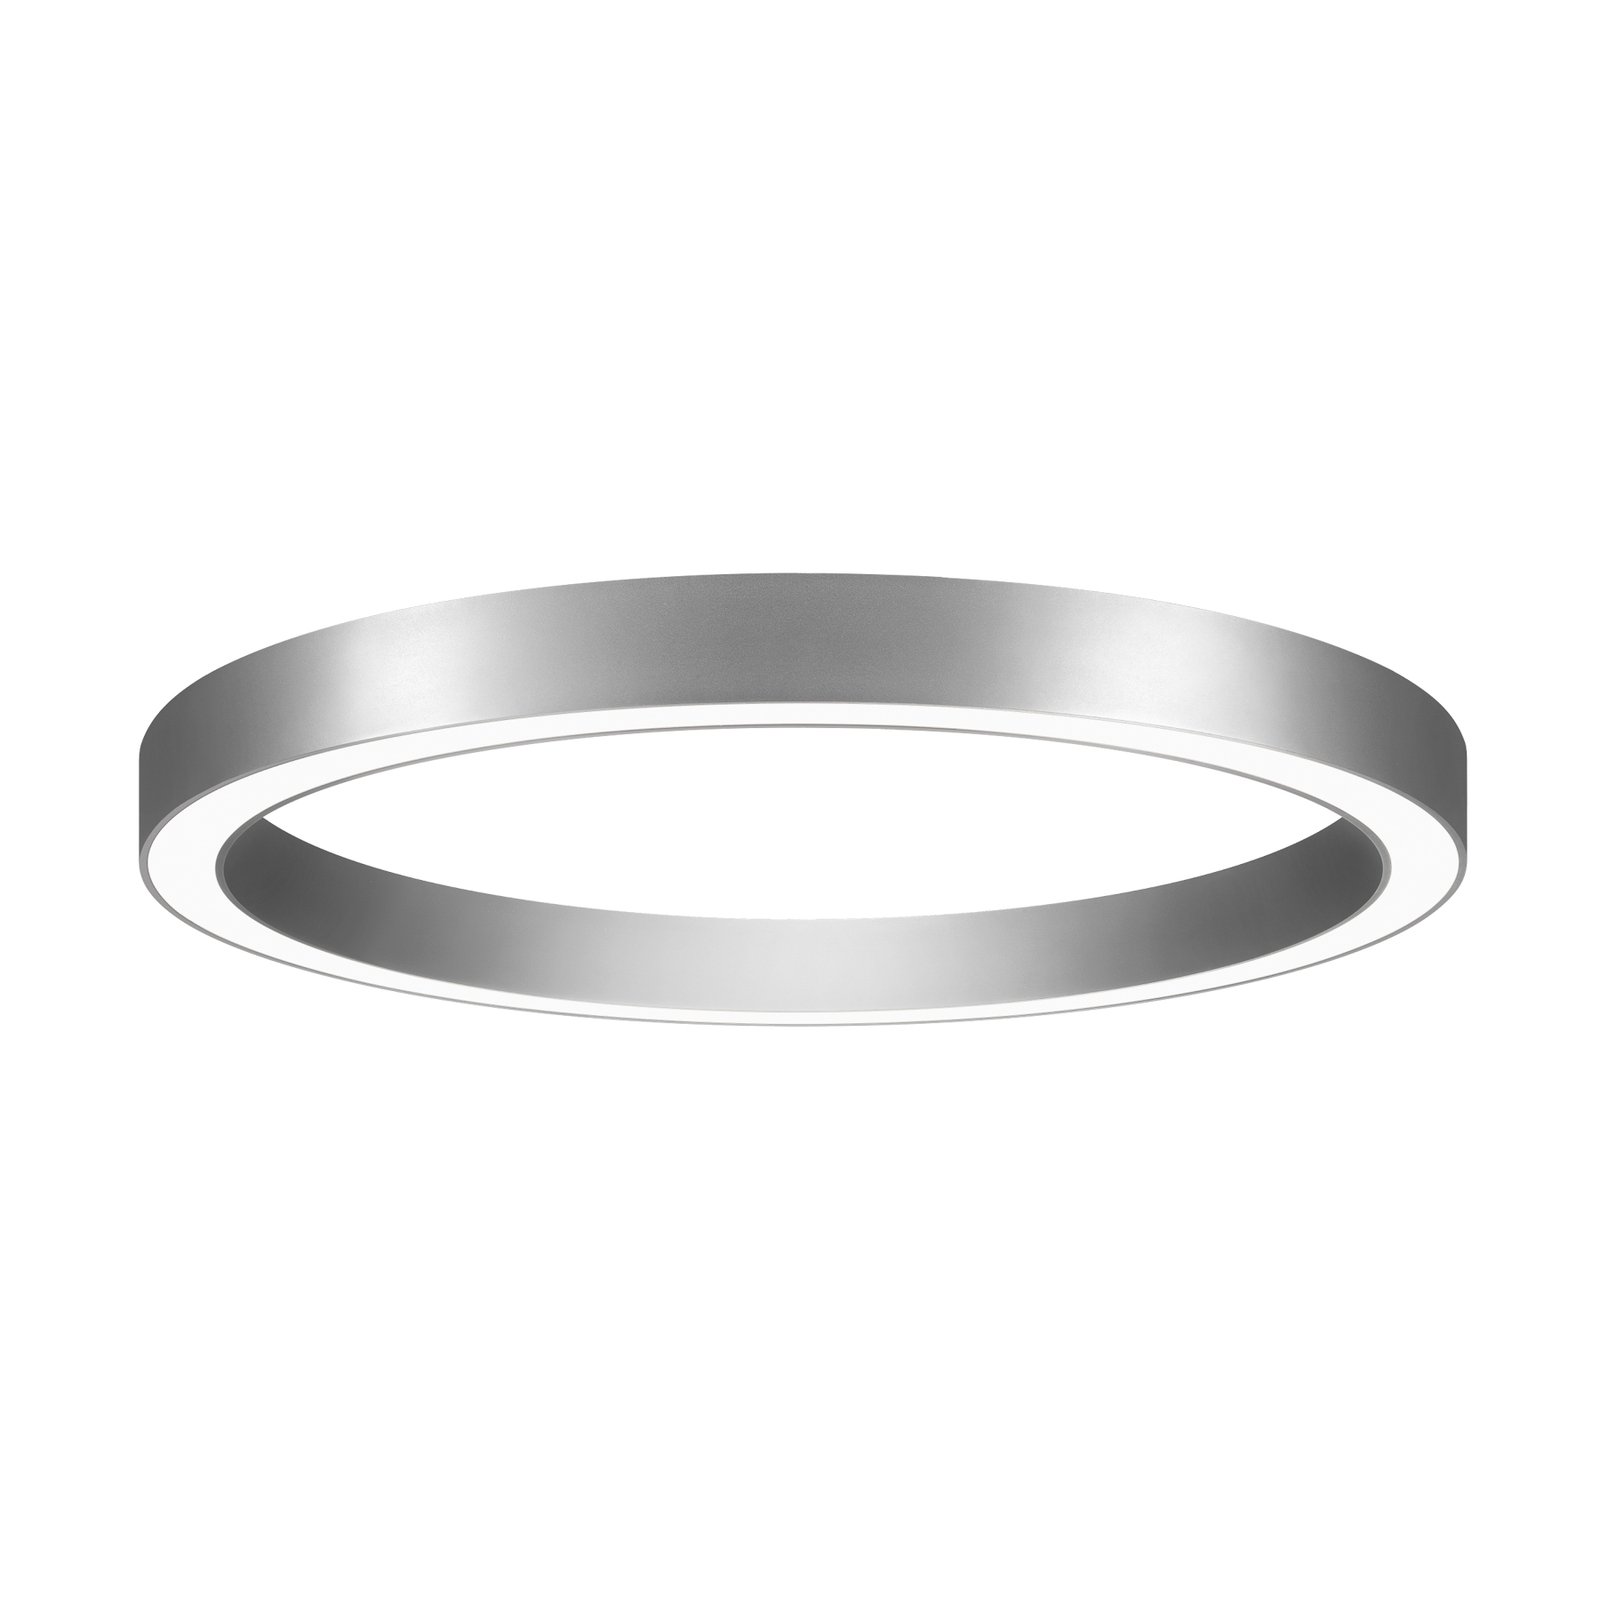 BRUMBERG Biro Circle Ring, Ø 60 cm, Casambi, stříbrná, 830